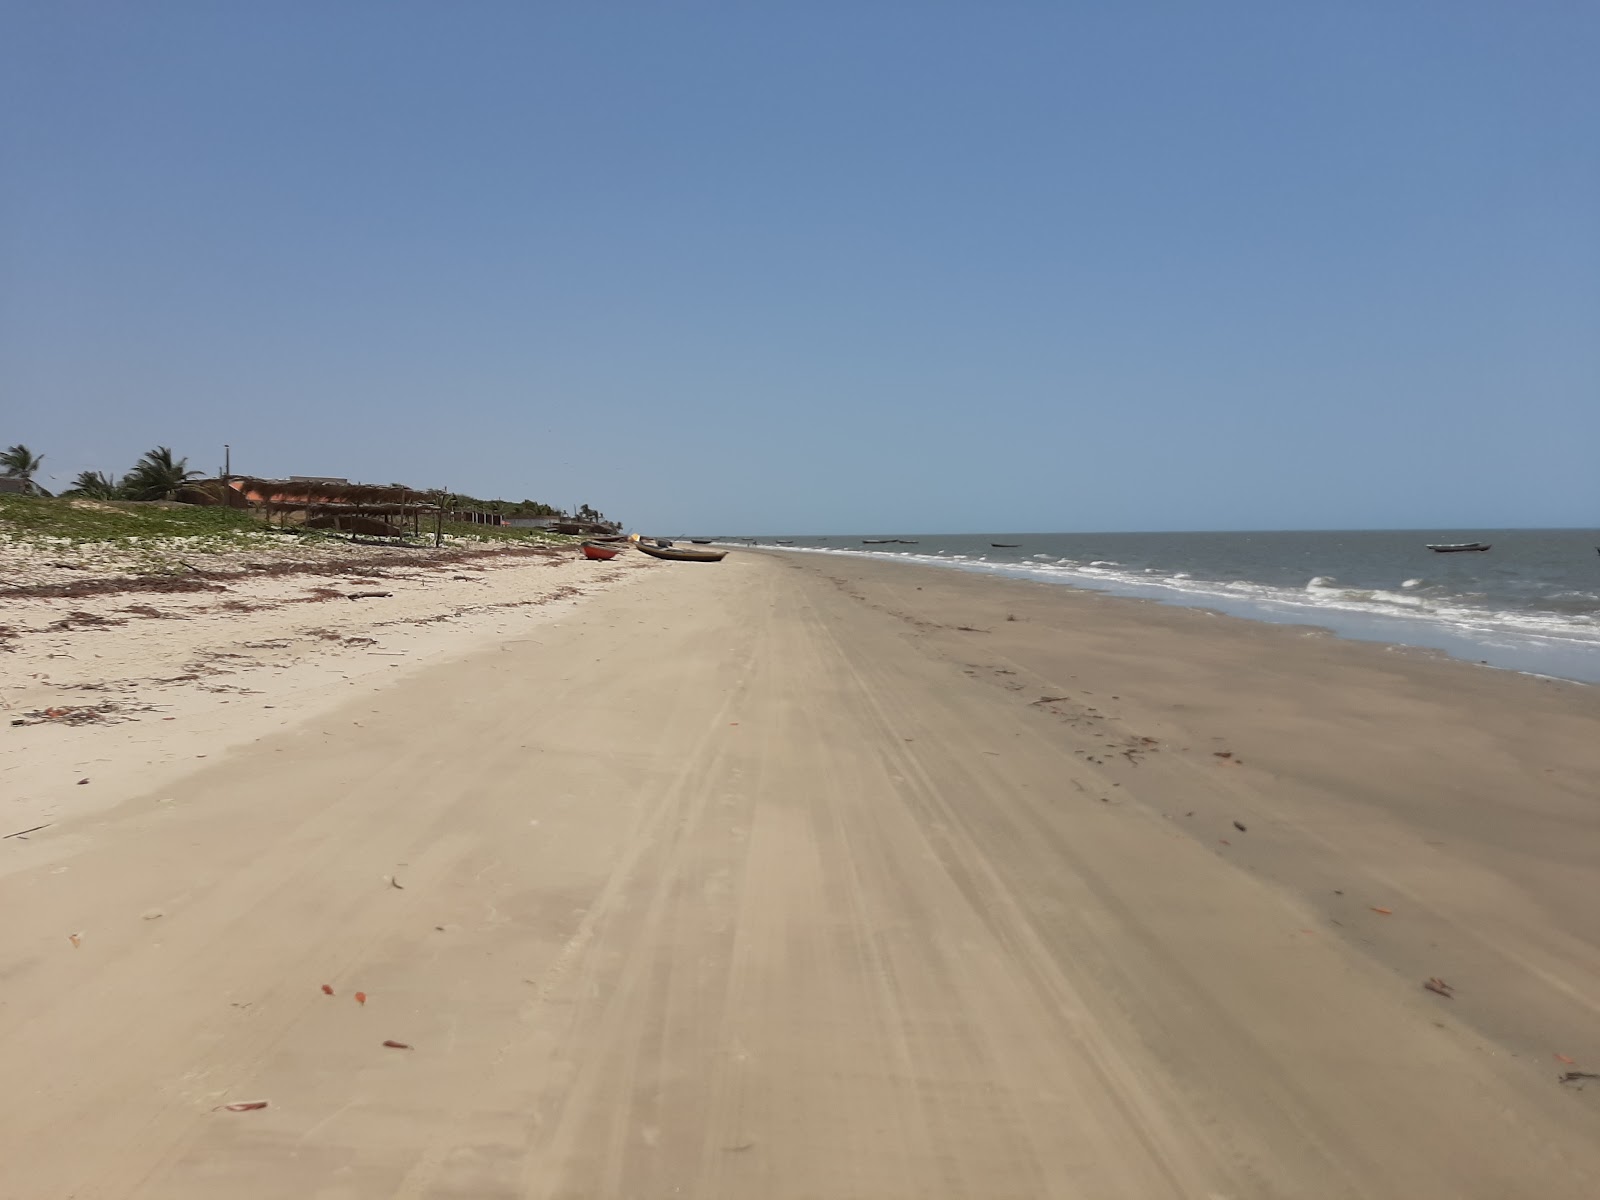 Zdjęcie Praia da Barra obszar udogodnień